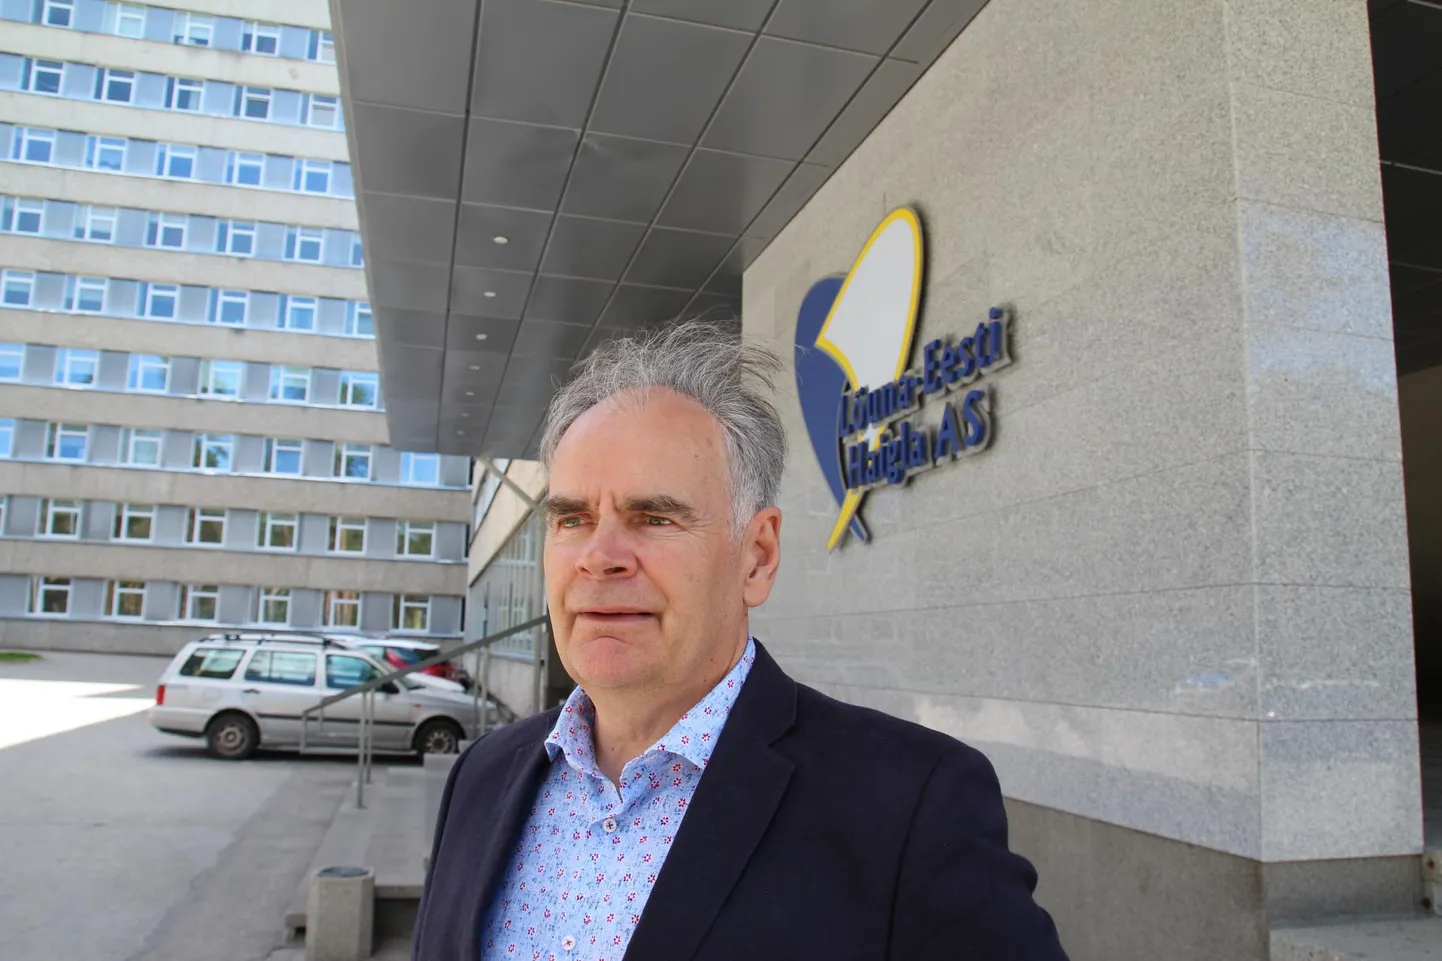 Lõuna-Eesti haigla juhatuse esimees Arvi Vask on optimistlik ja usub, et kellegi elu ega tervis haiglas elektrikatkestuse tõttu ohtu ei satu.